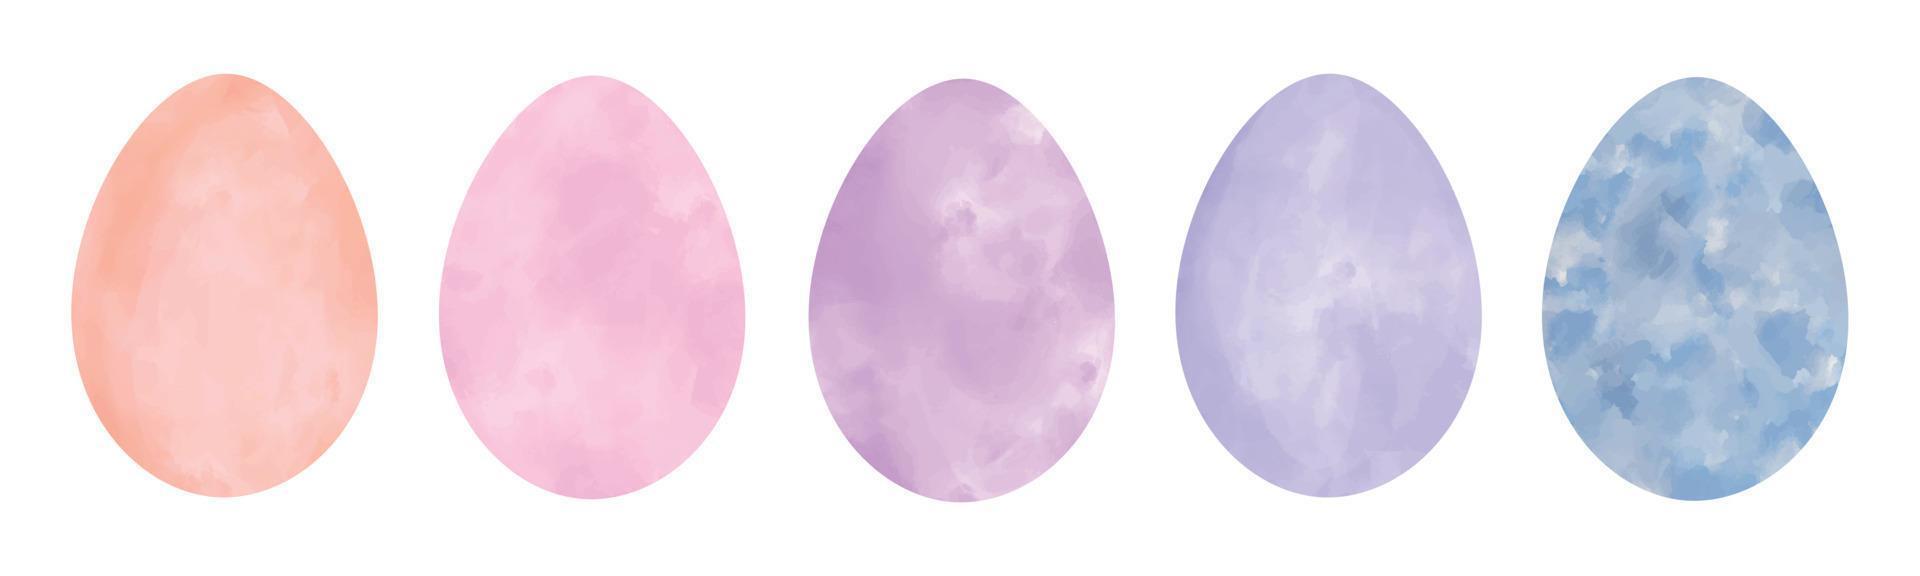 set di uova di Pasqua pastello vettoriali con texture ad acquerello. collezione di elementi di clip art a colori di acqua primaverile dipinta a mano isolata su sfondo bianco. uova di primavera color acquerello beige, rosa, viola, blu.